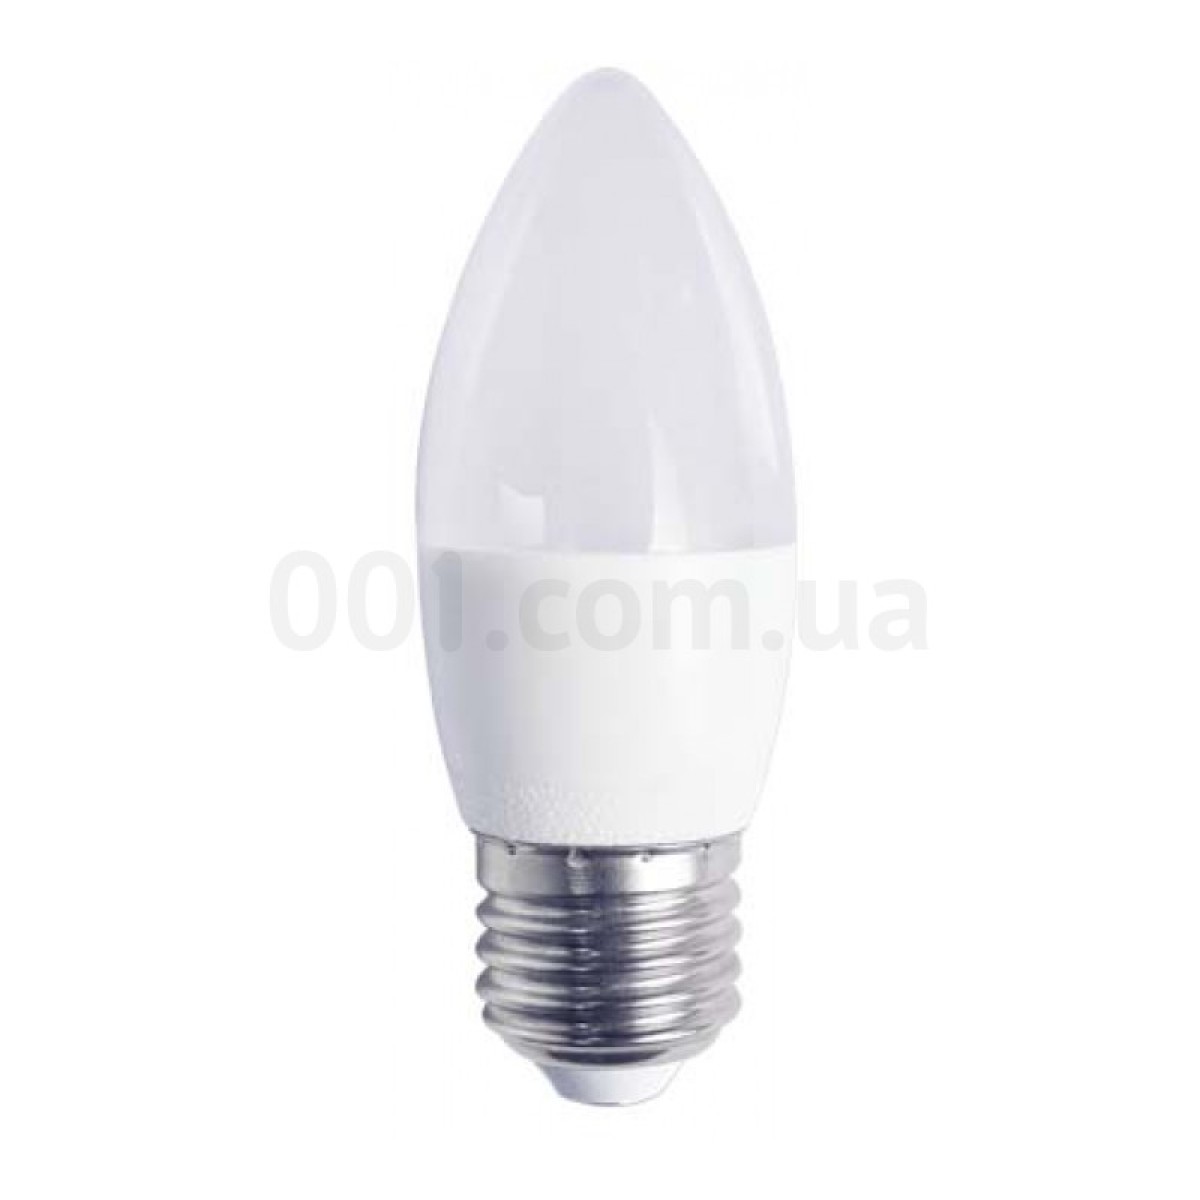 Светодиодная лампа LB-720 C37 (свеча) 4Вт 4000K E27, Feron 98_98.jpg